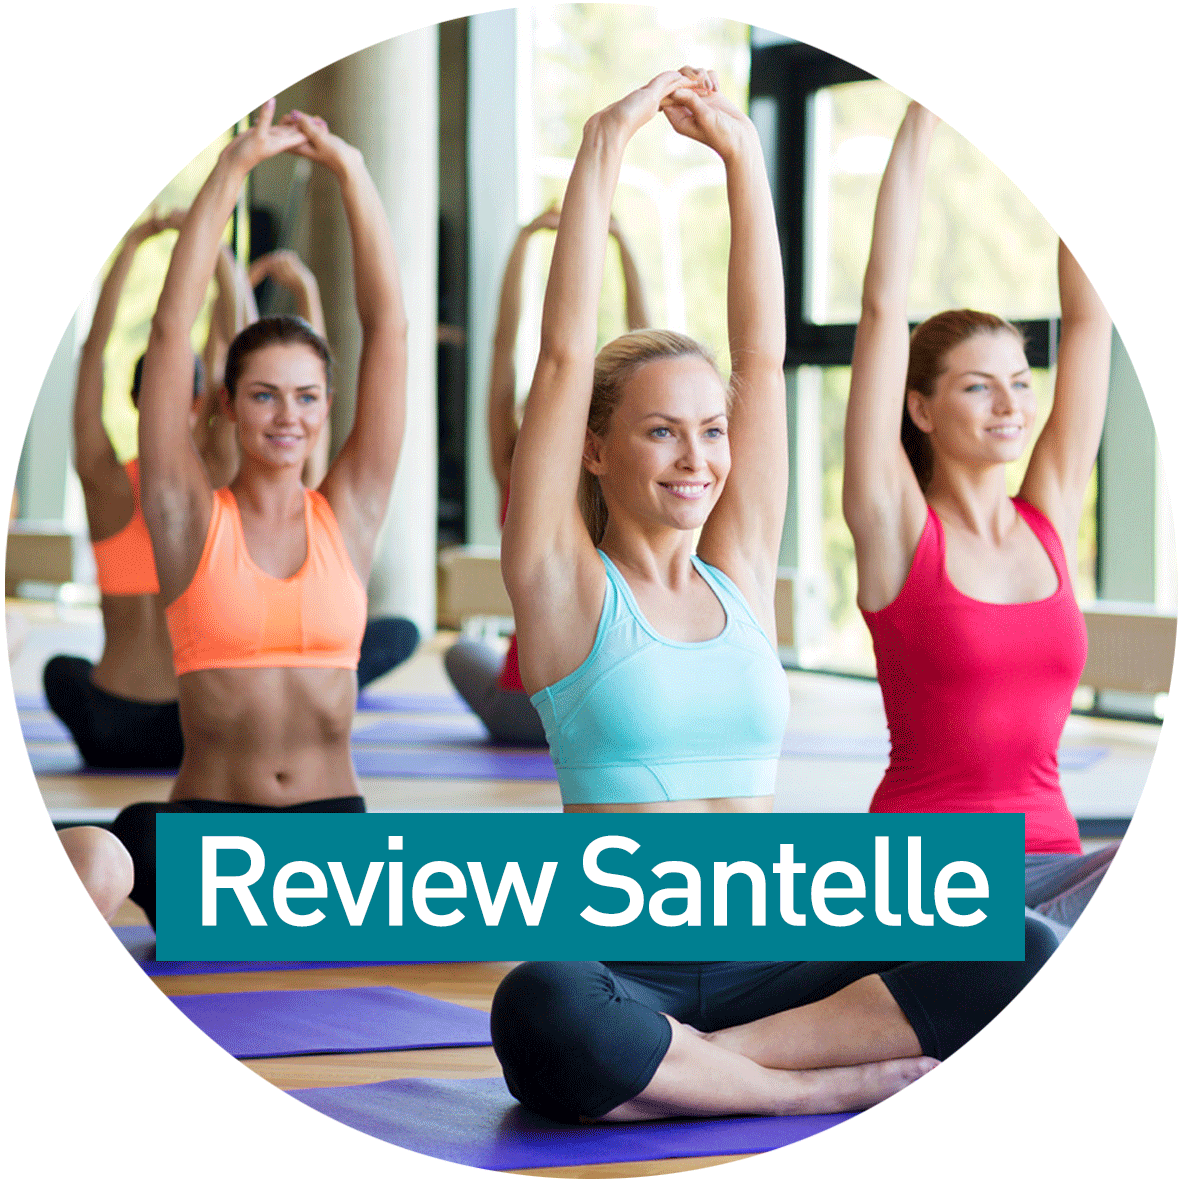 Review Santelle